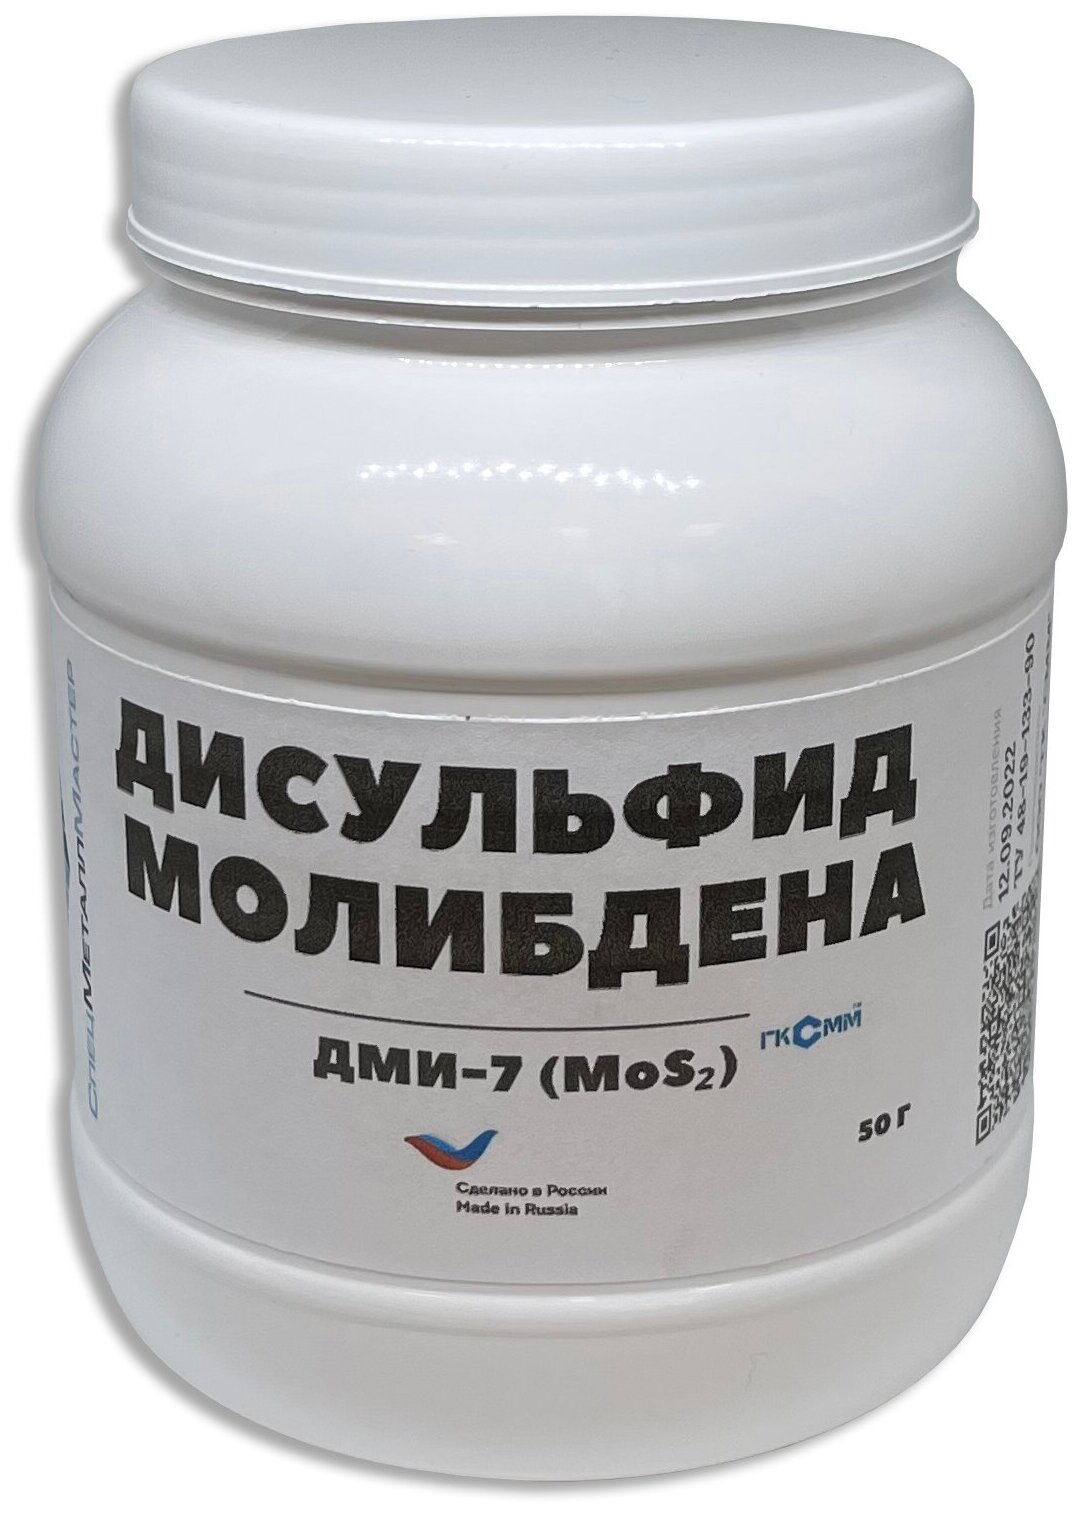 Дисульфид молибдена ДМИ-7 / сухая смазка / 50 грамм